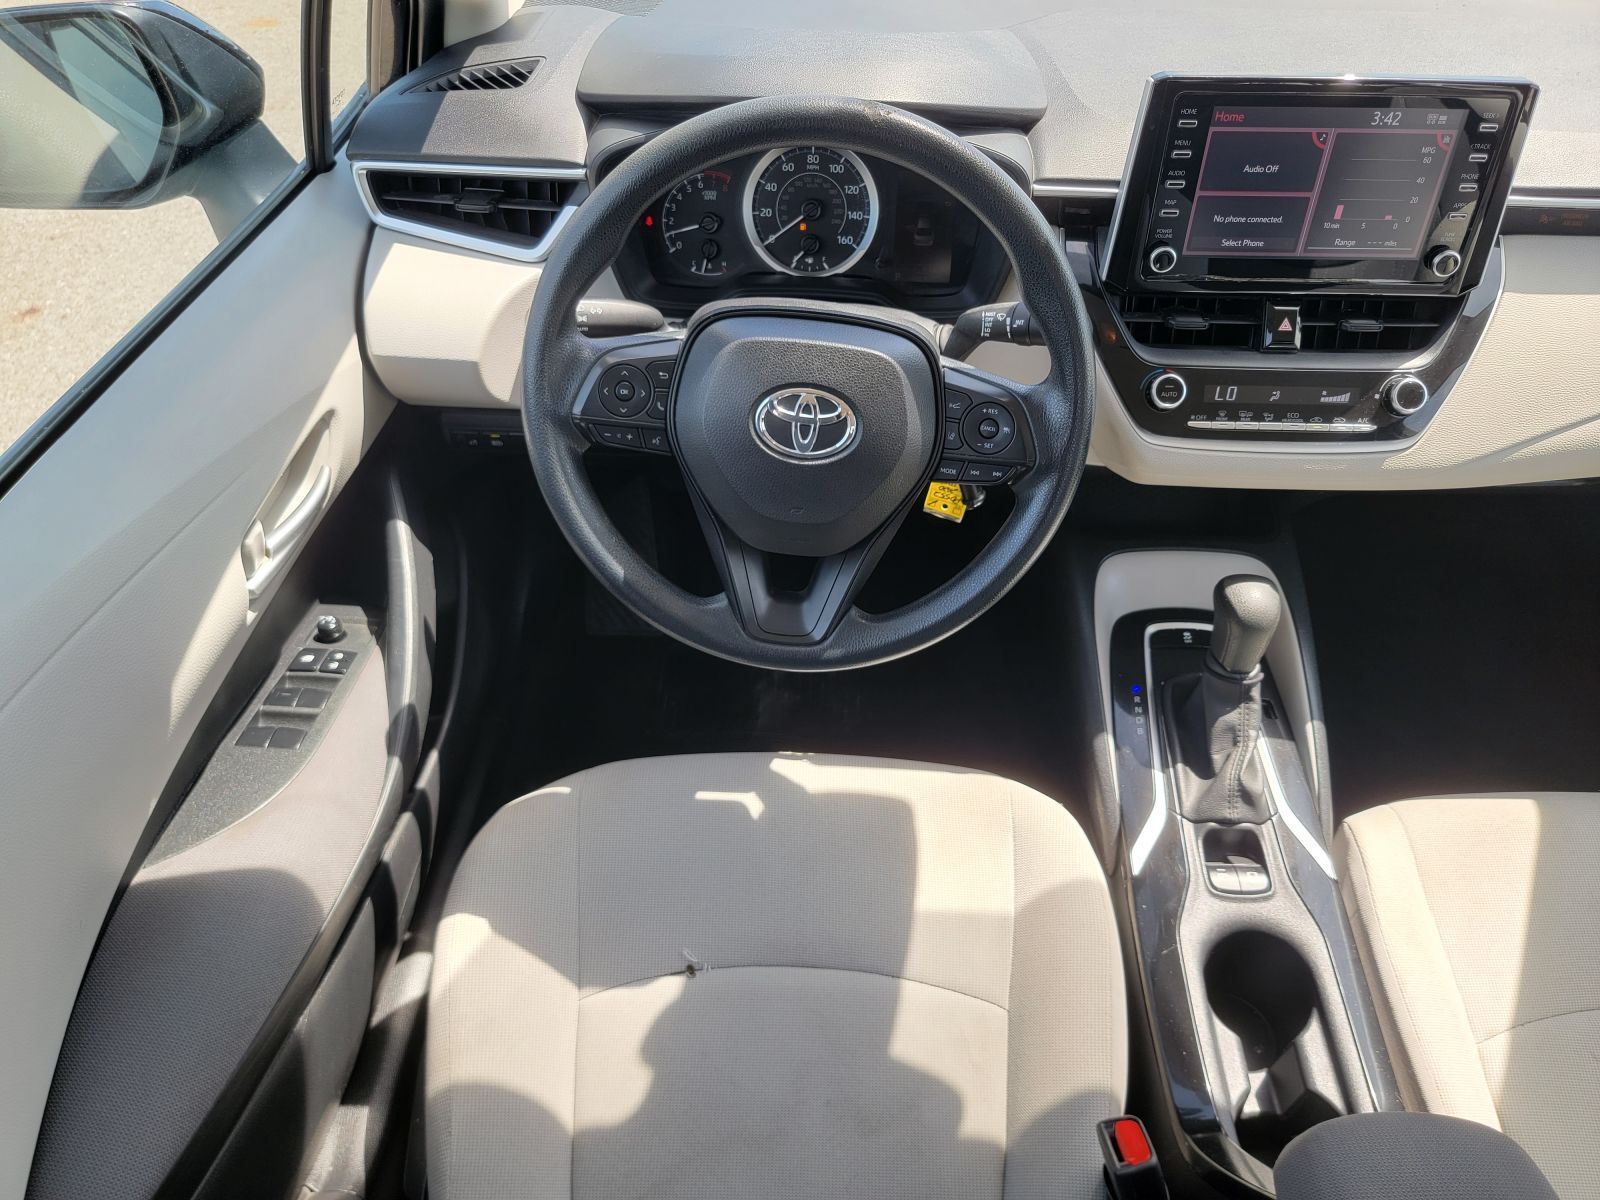 Used, 2020 Toyota Corolla LE CVT (Natl), Black, P0552-17